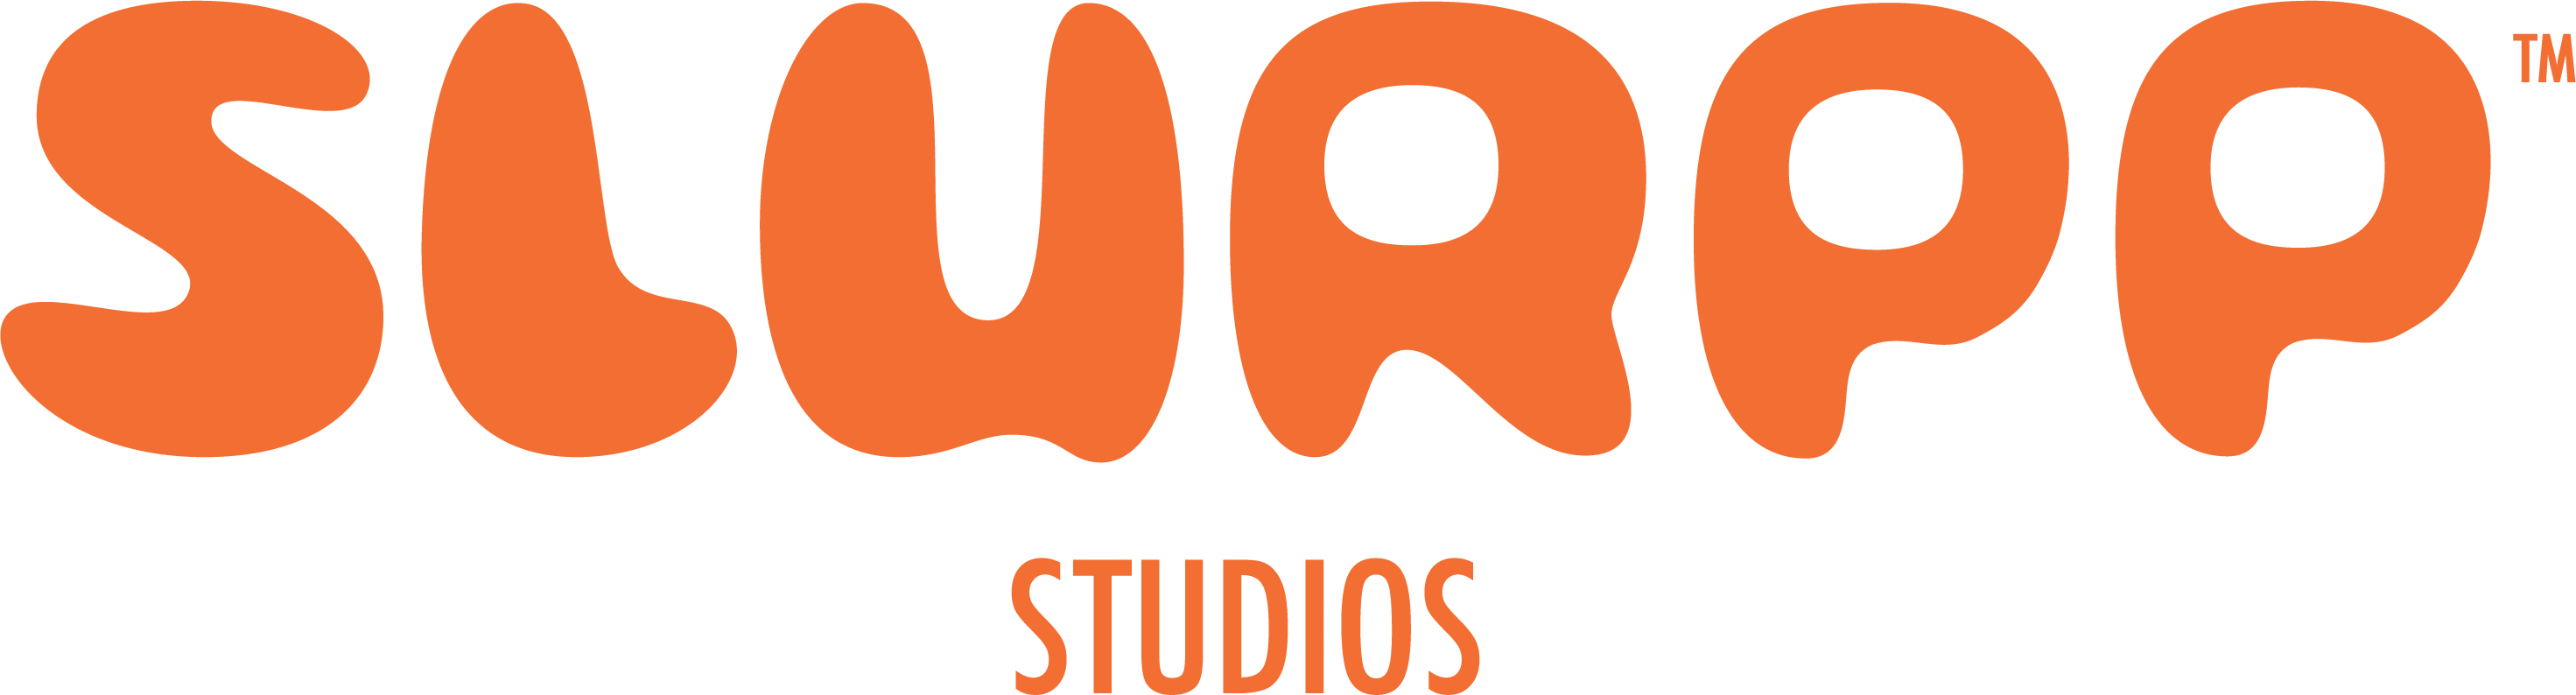 Slurrp Studios